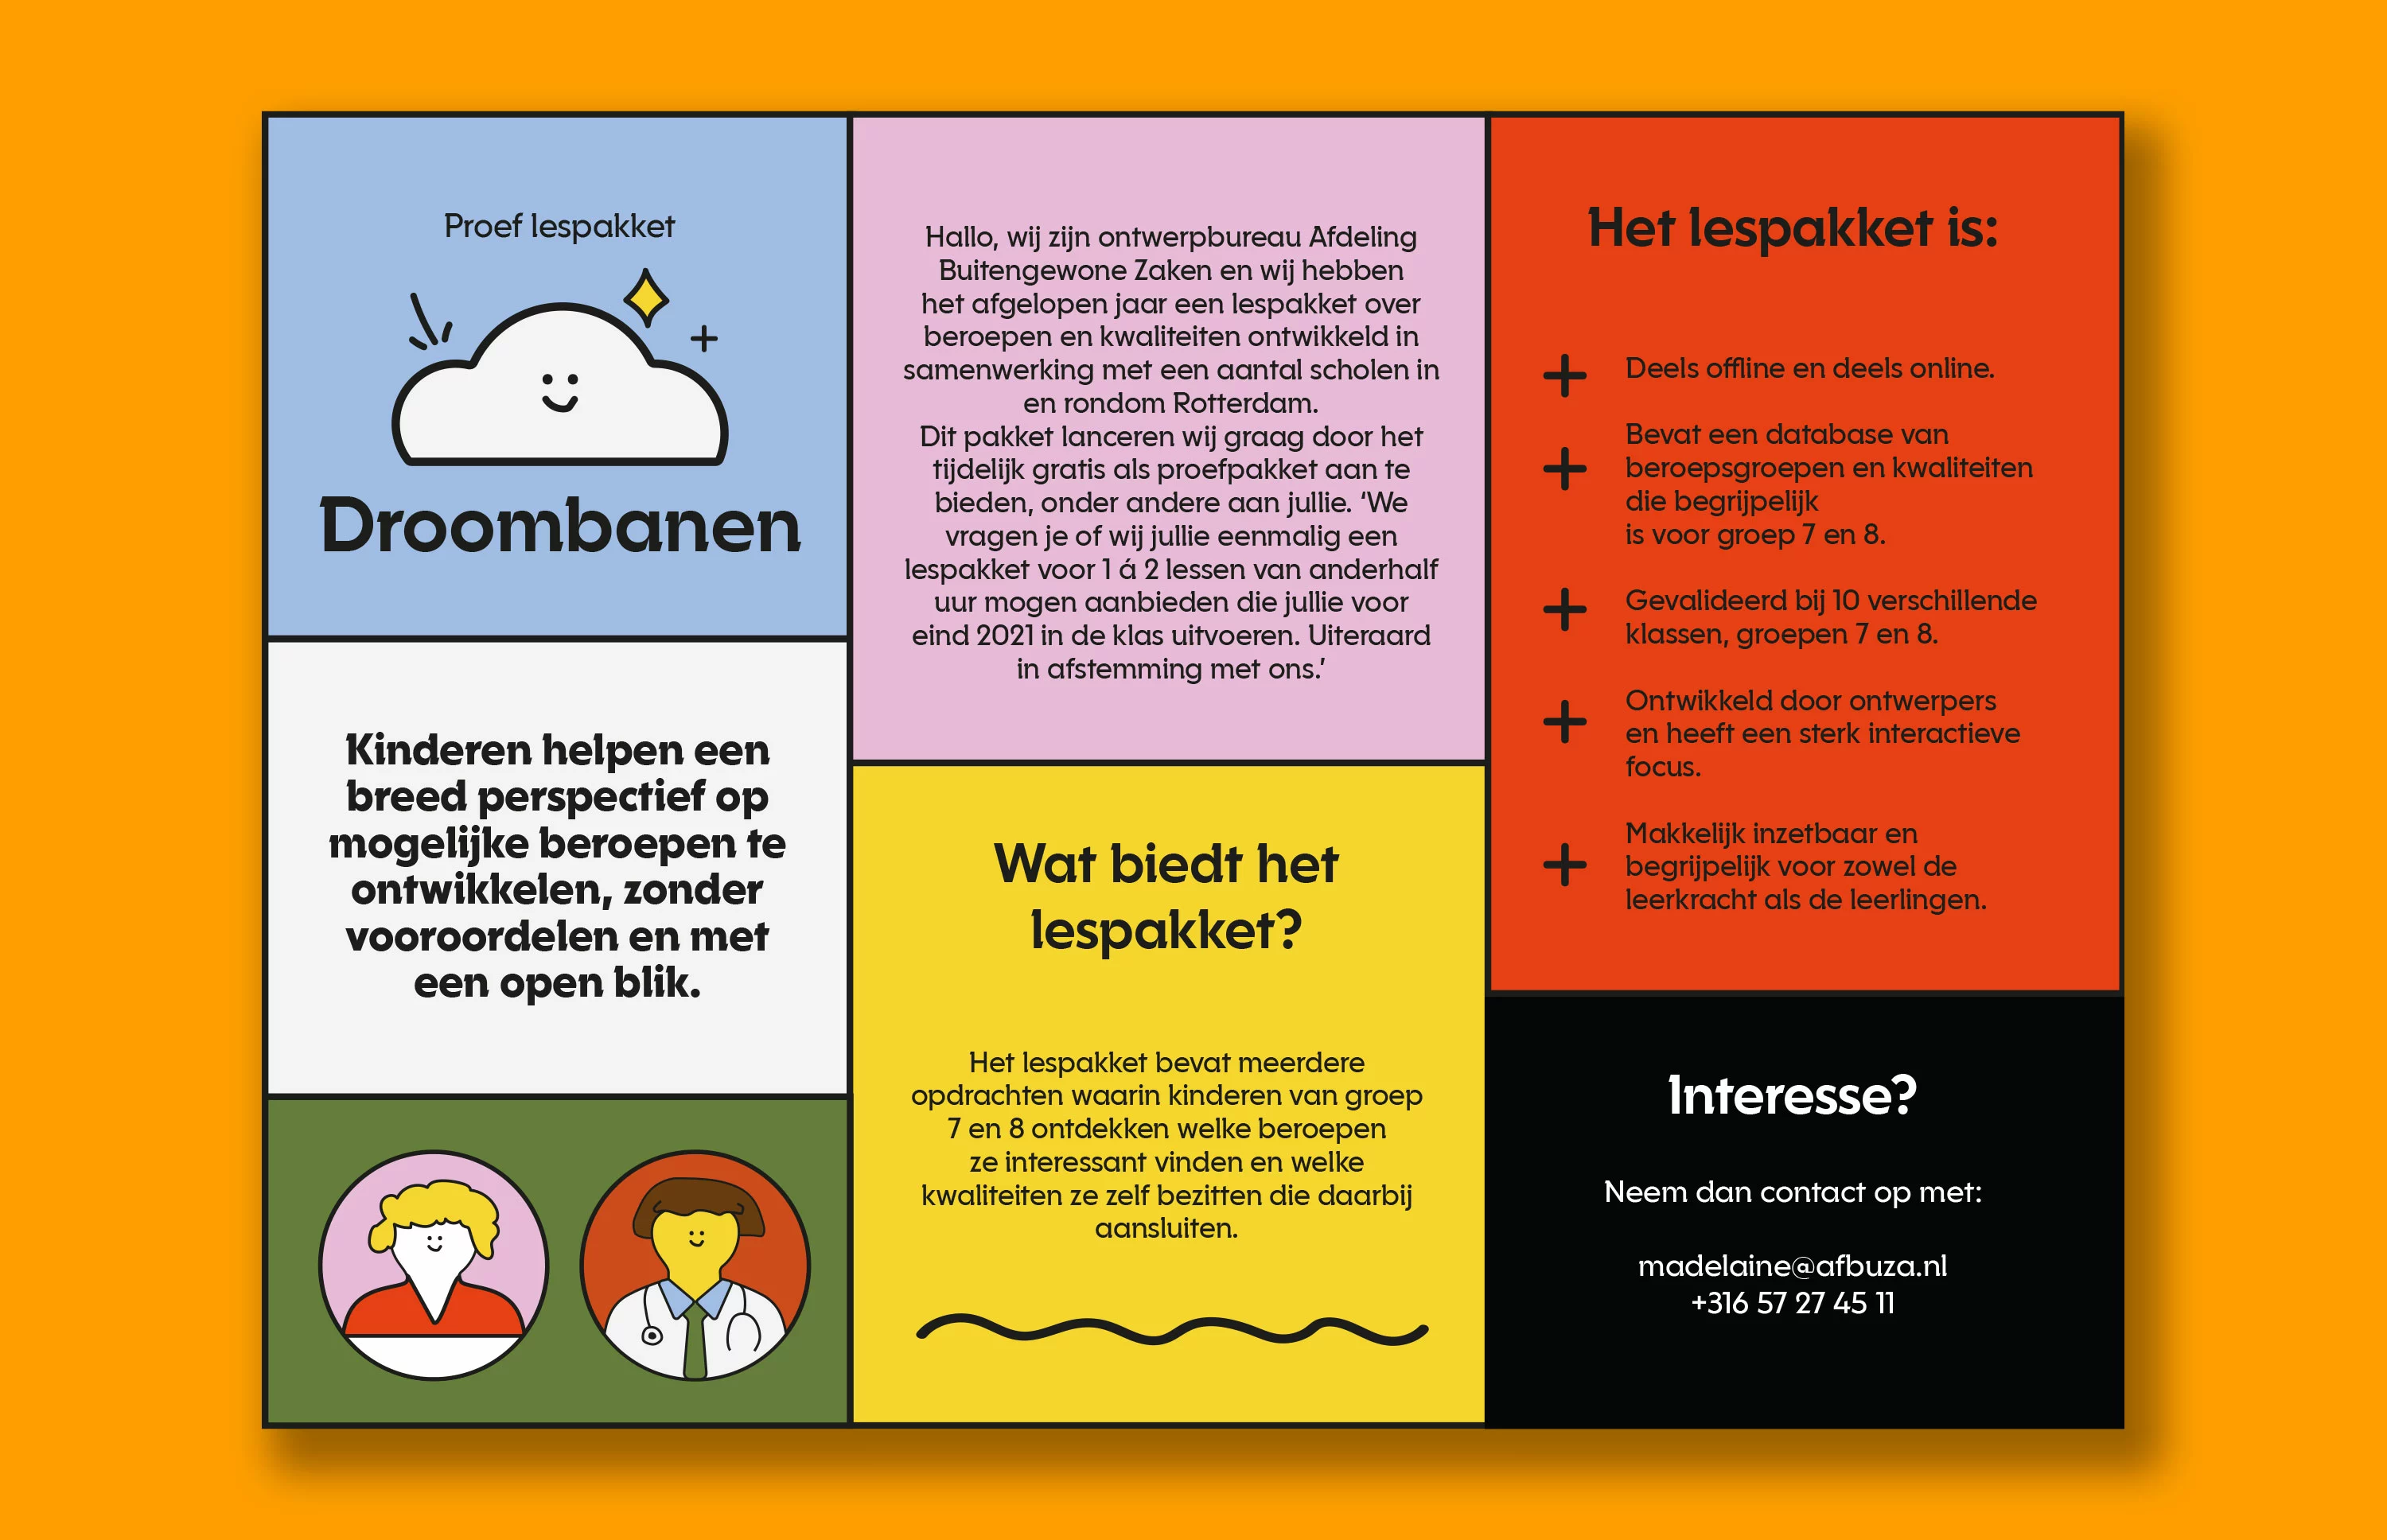 Kleurrijke flyer met informatie over het proef lespakket van Droombanen.